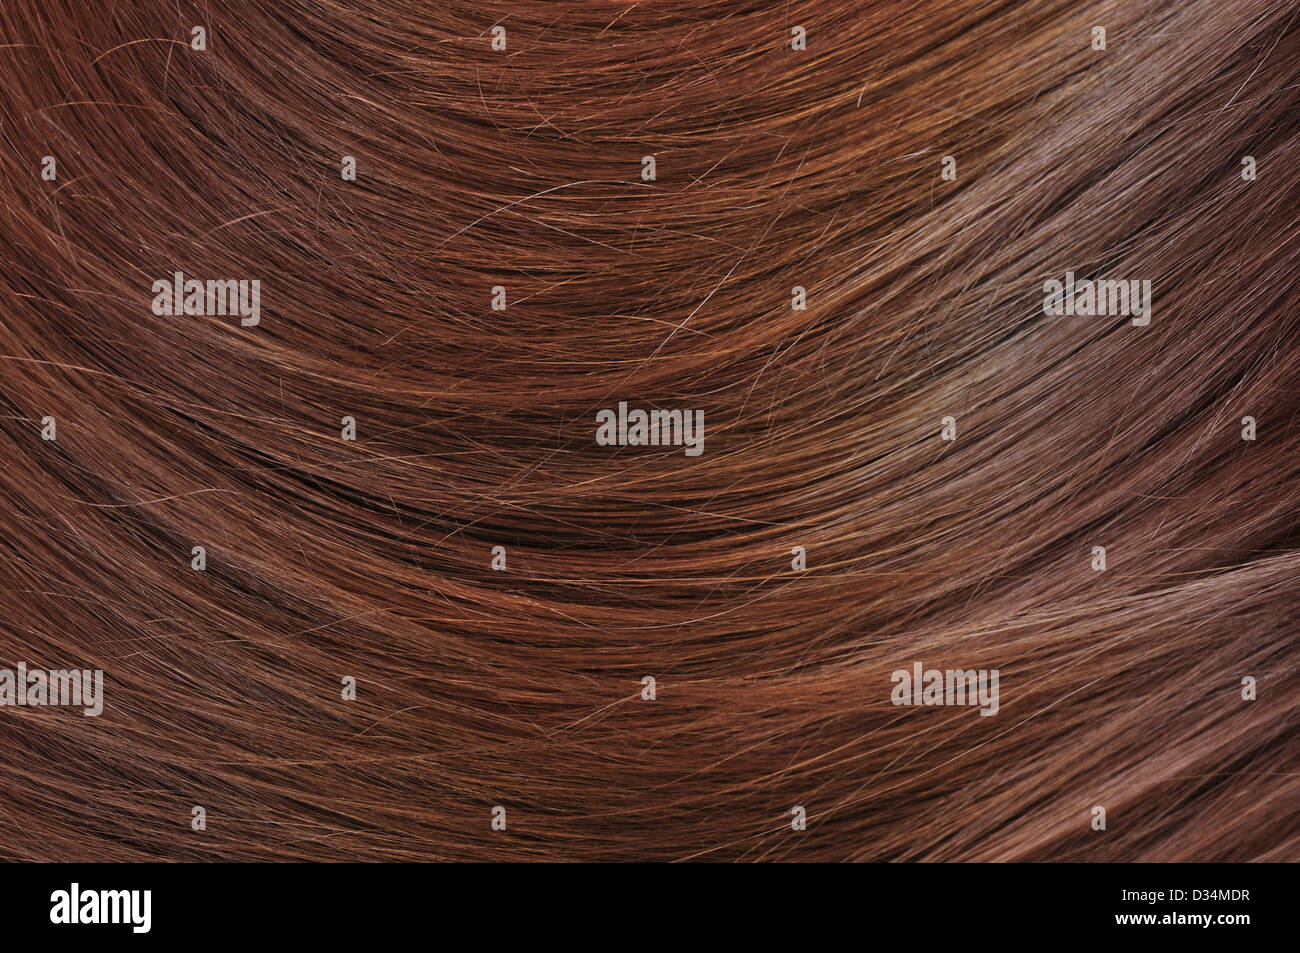 beautiful healthy shiny hair texture closeup Stock Photo